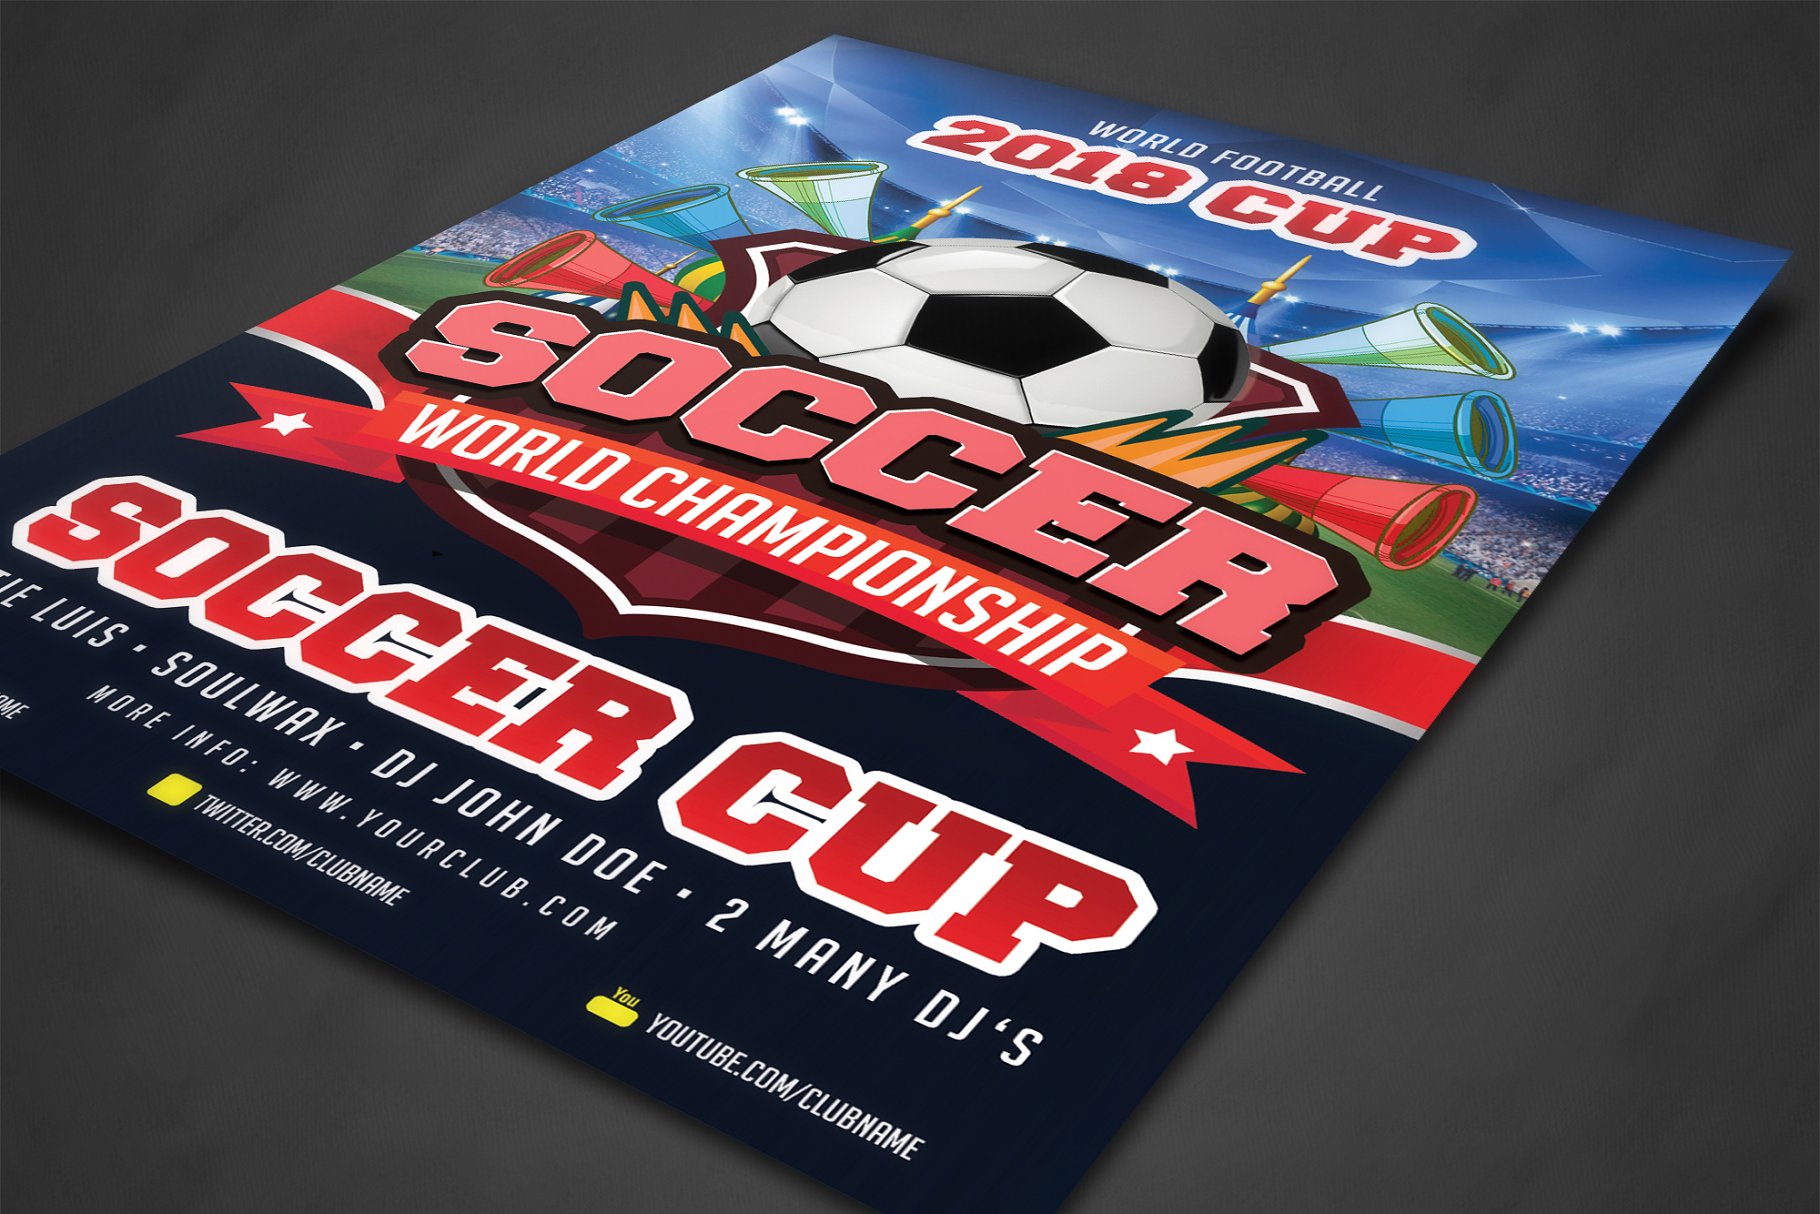 世界杯足球海报制作模板 Soccer Cup Poster